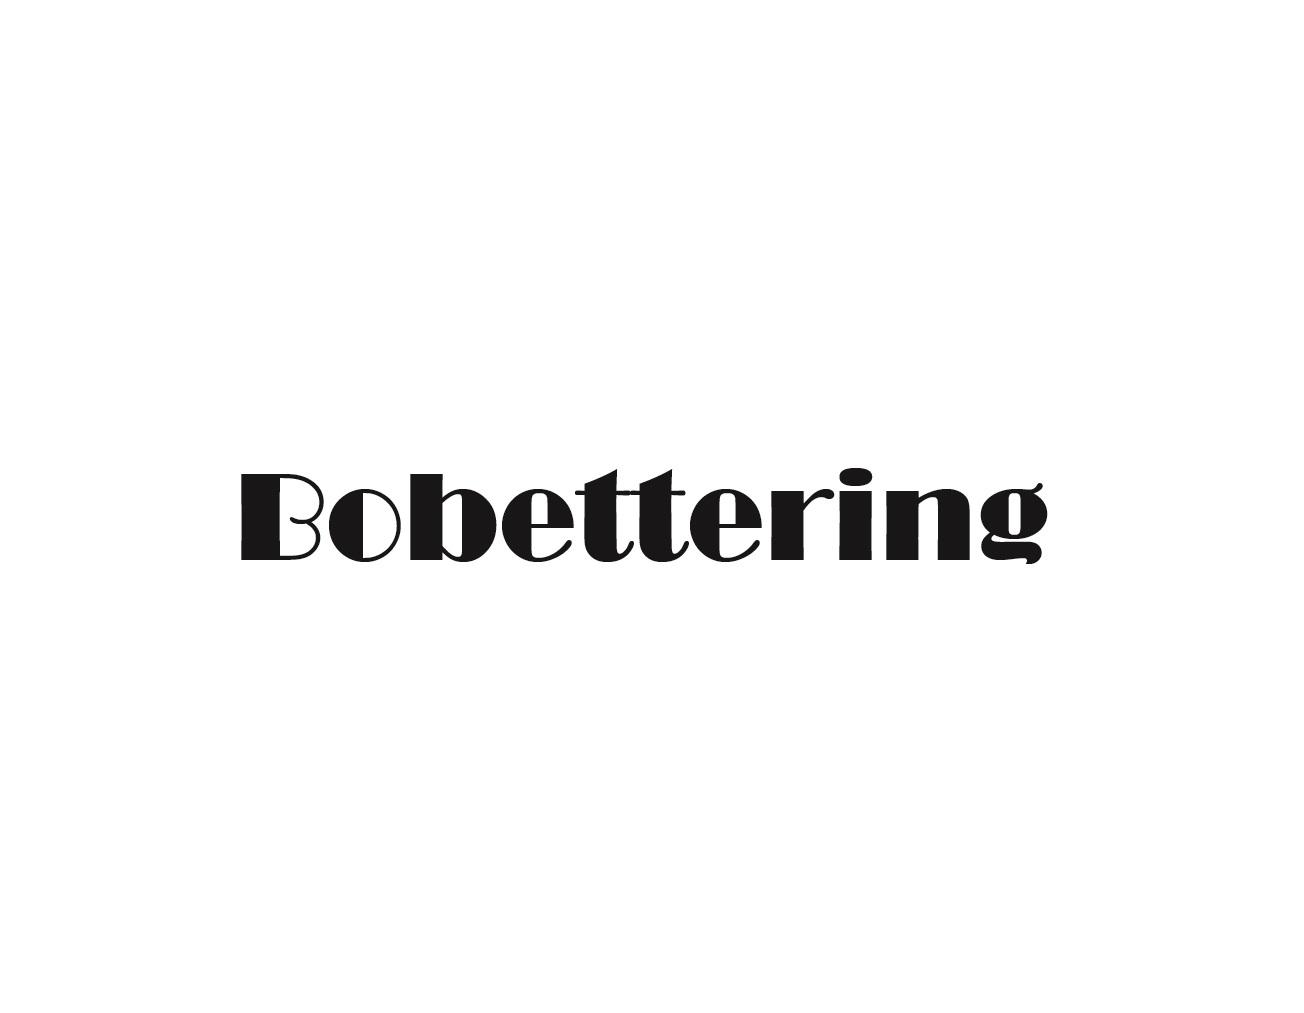 BOBETTERING